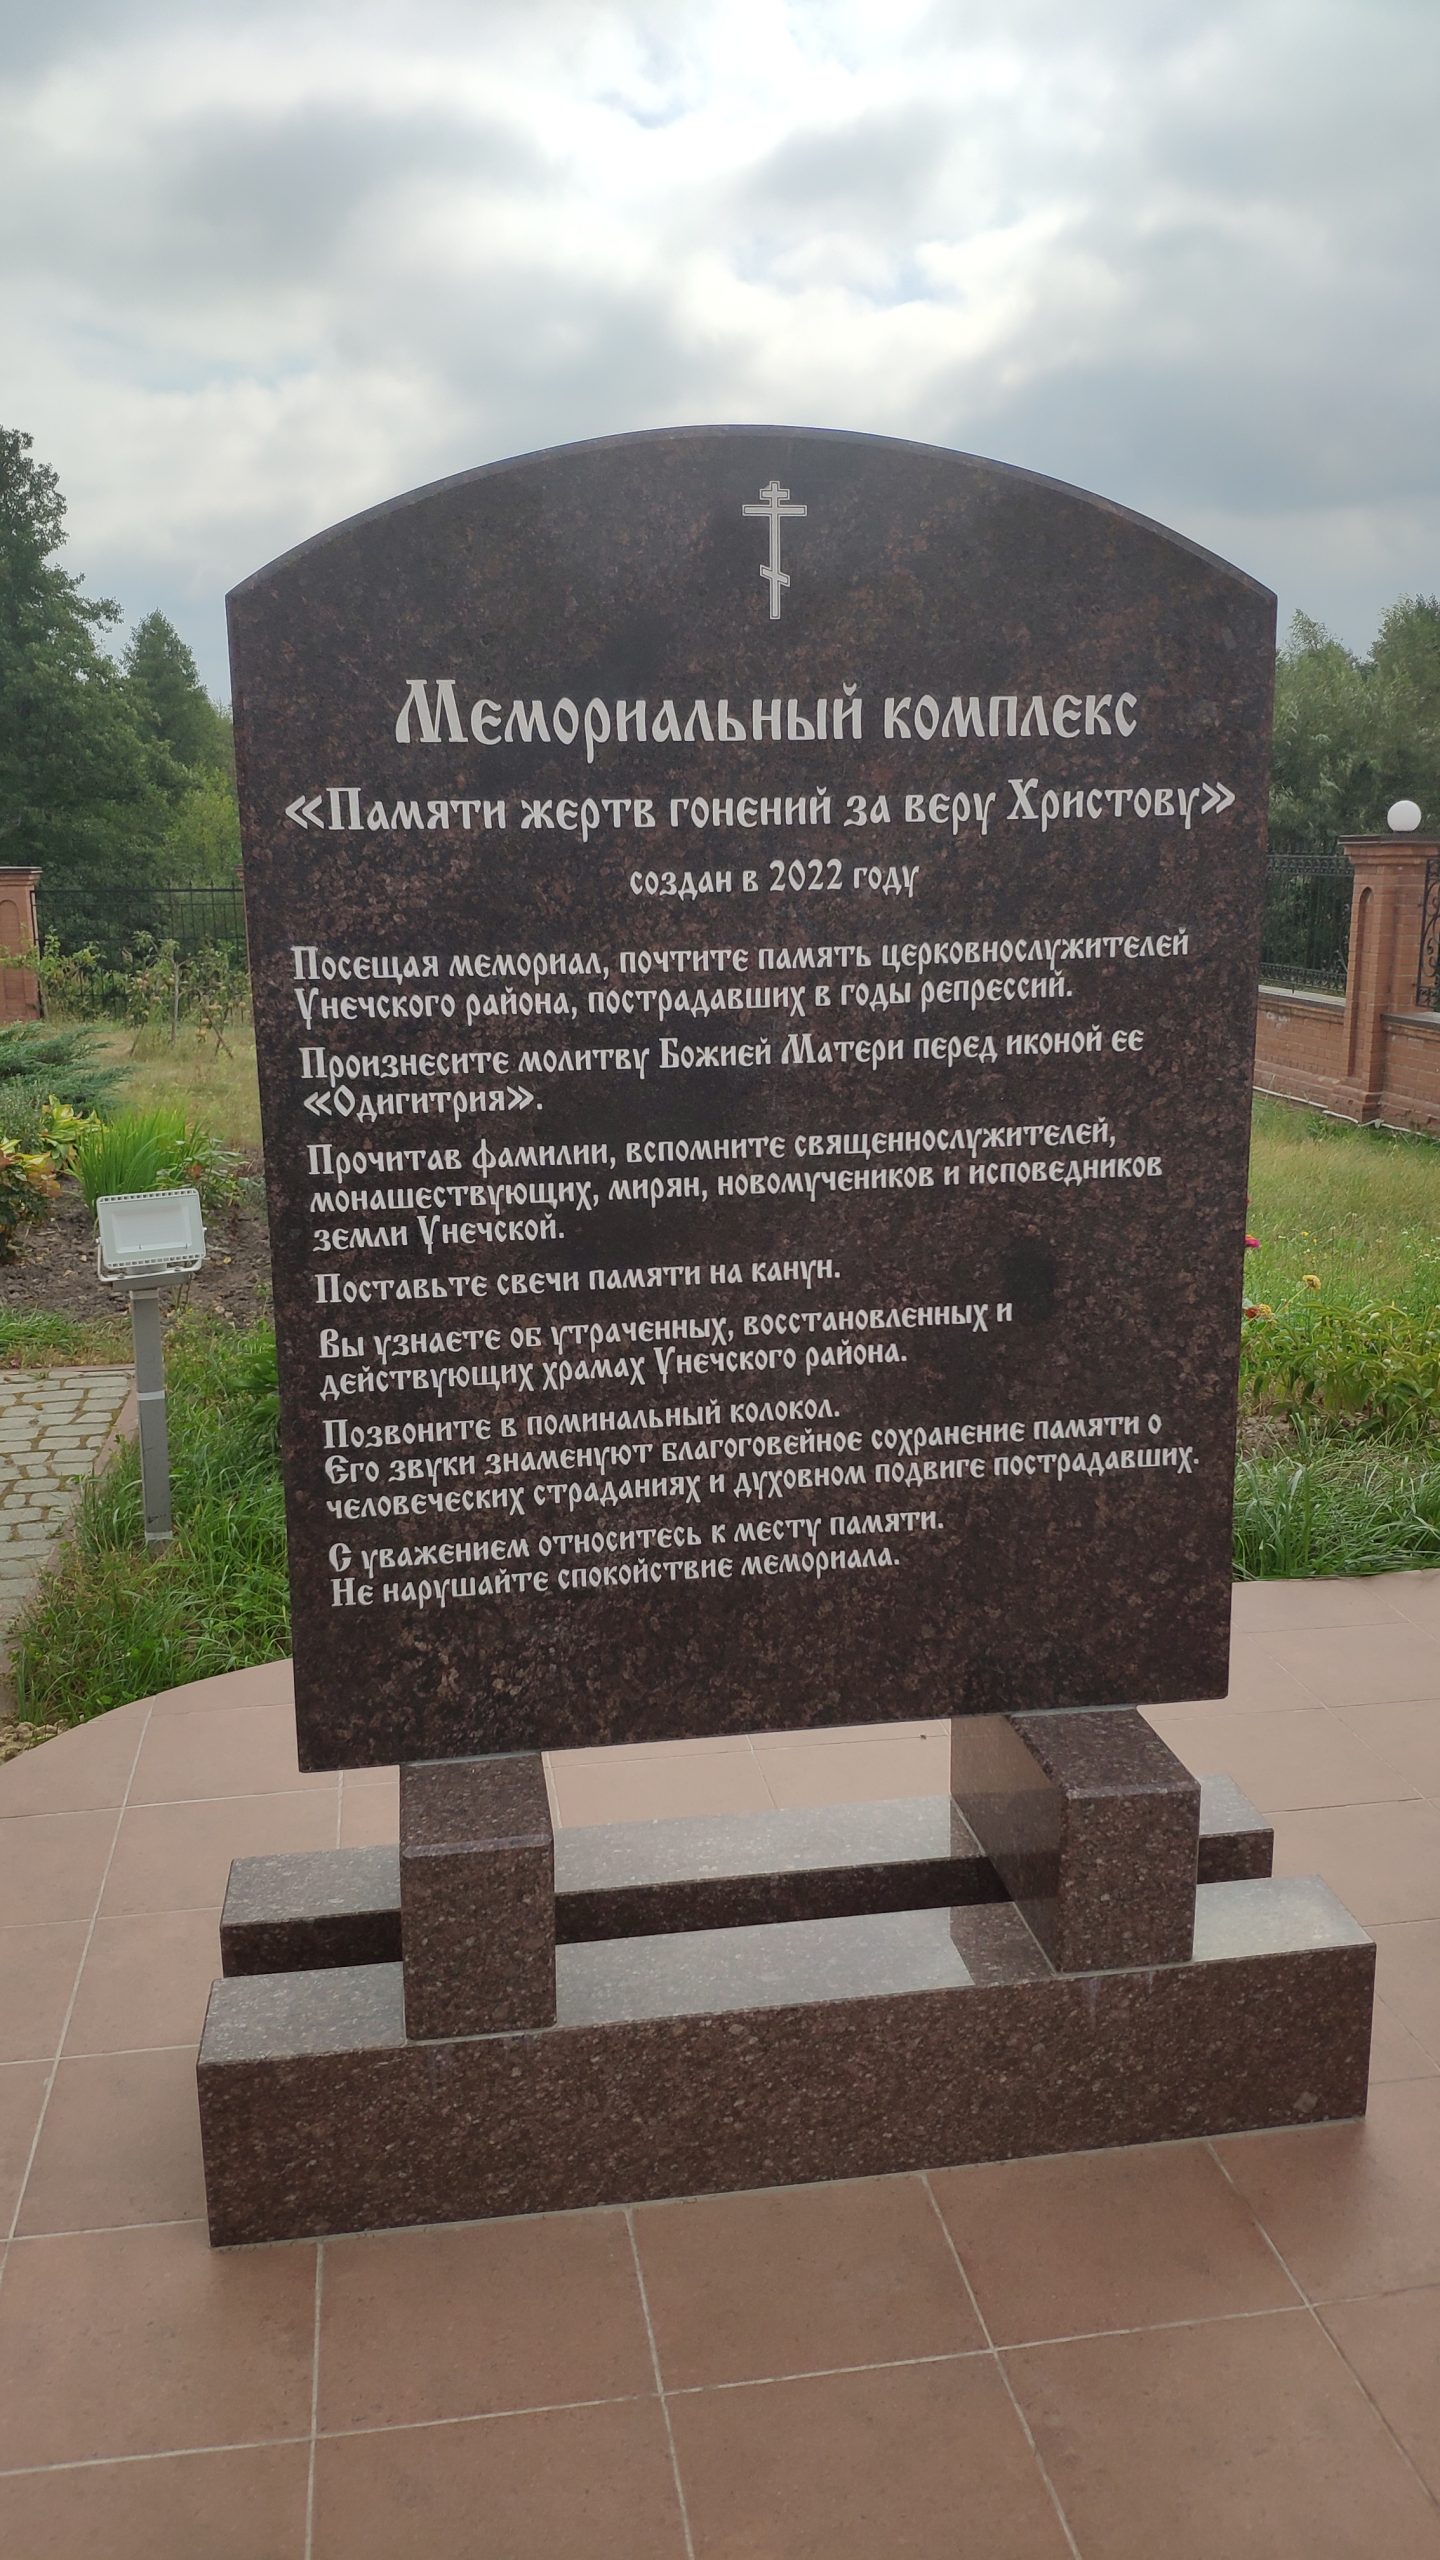 Мемориал в память о священнослужителях, пострадавших в годы гонения на православную церковь. Белогорщь.